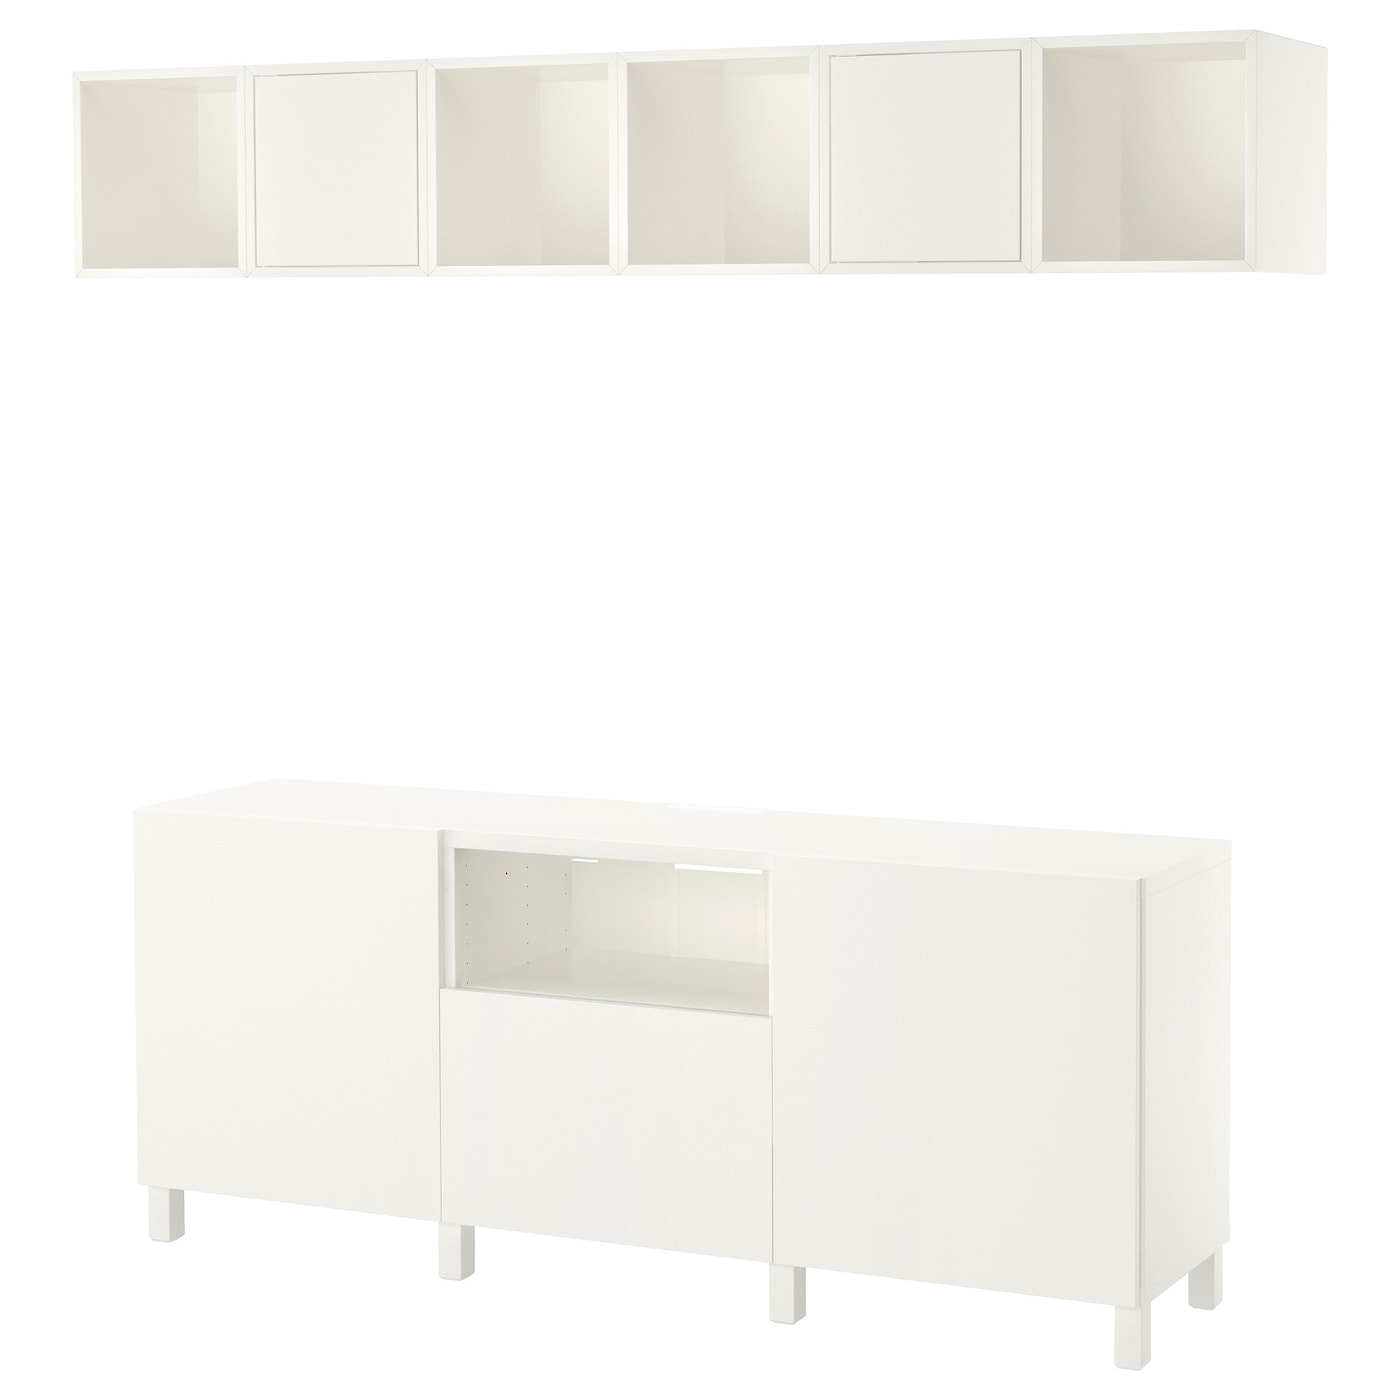 Комплект мебели д/гостиной  - IKEA BESTÅ/BESTA EKET, 220x42x210см, белый, БЕСТО ЭКЕТ ИКЕА